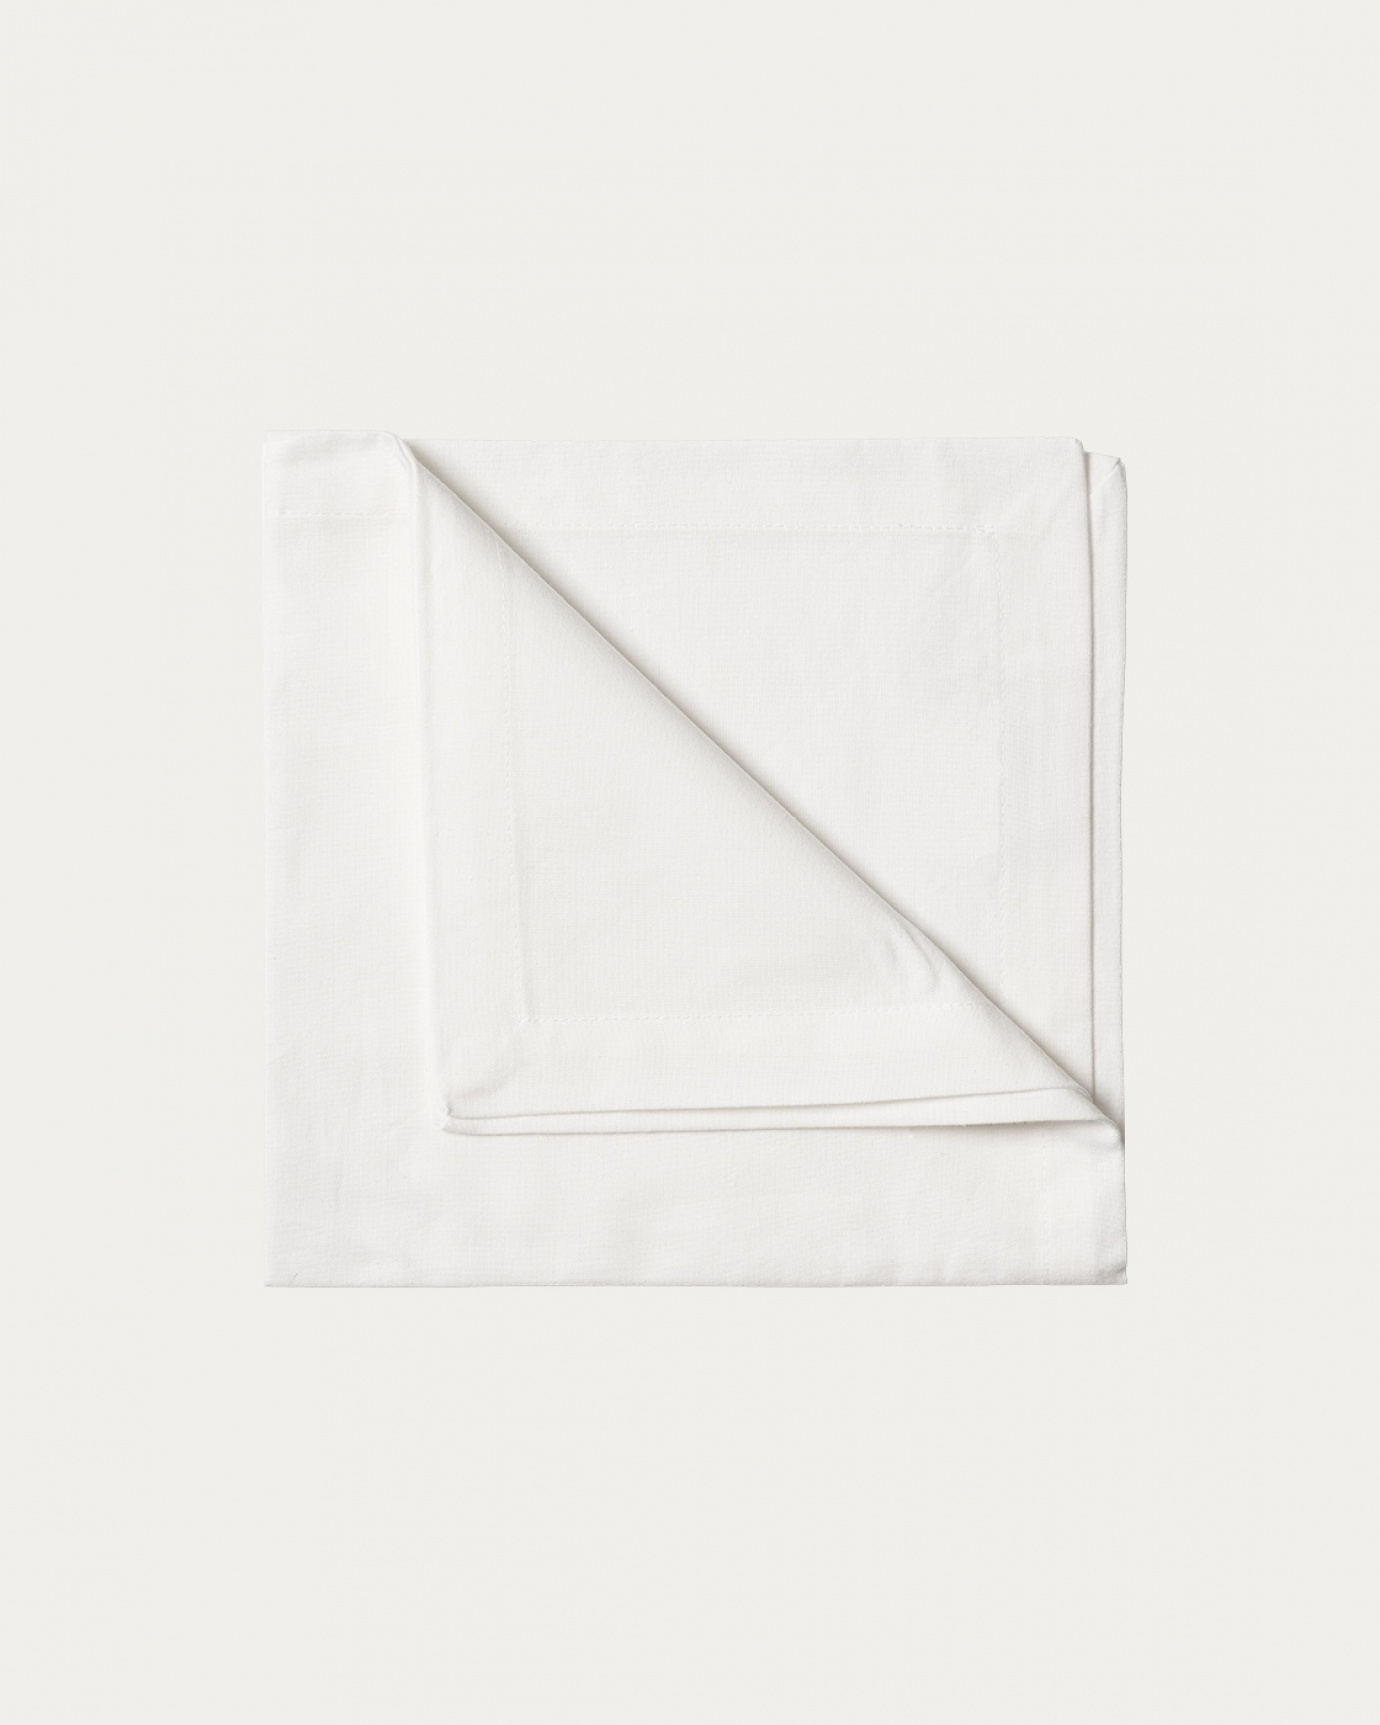 Produktbild weiß ROBERT Serviette aus weicher Baumwolle von LINUM DESIGN. Größe 45x45 cm und in 4er-Pack verkauft.